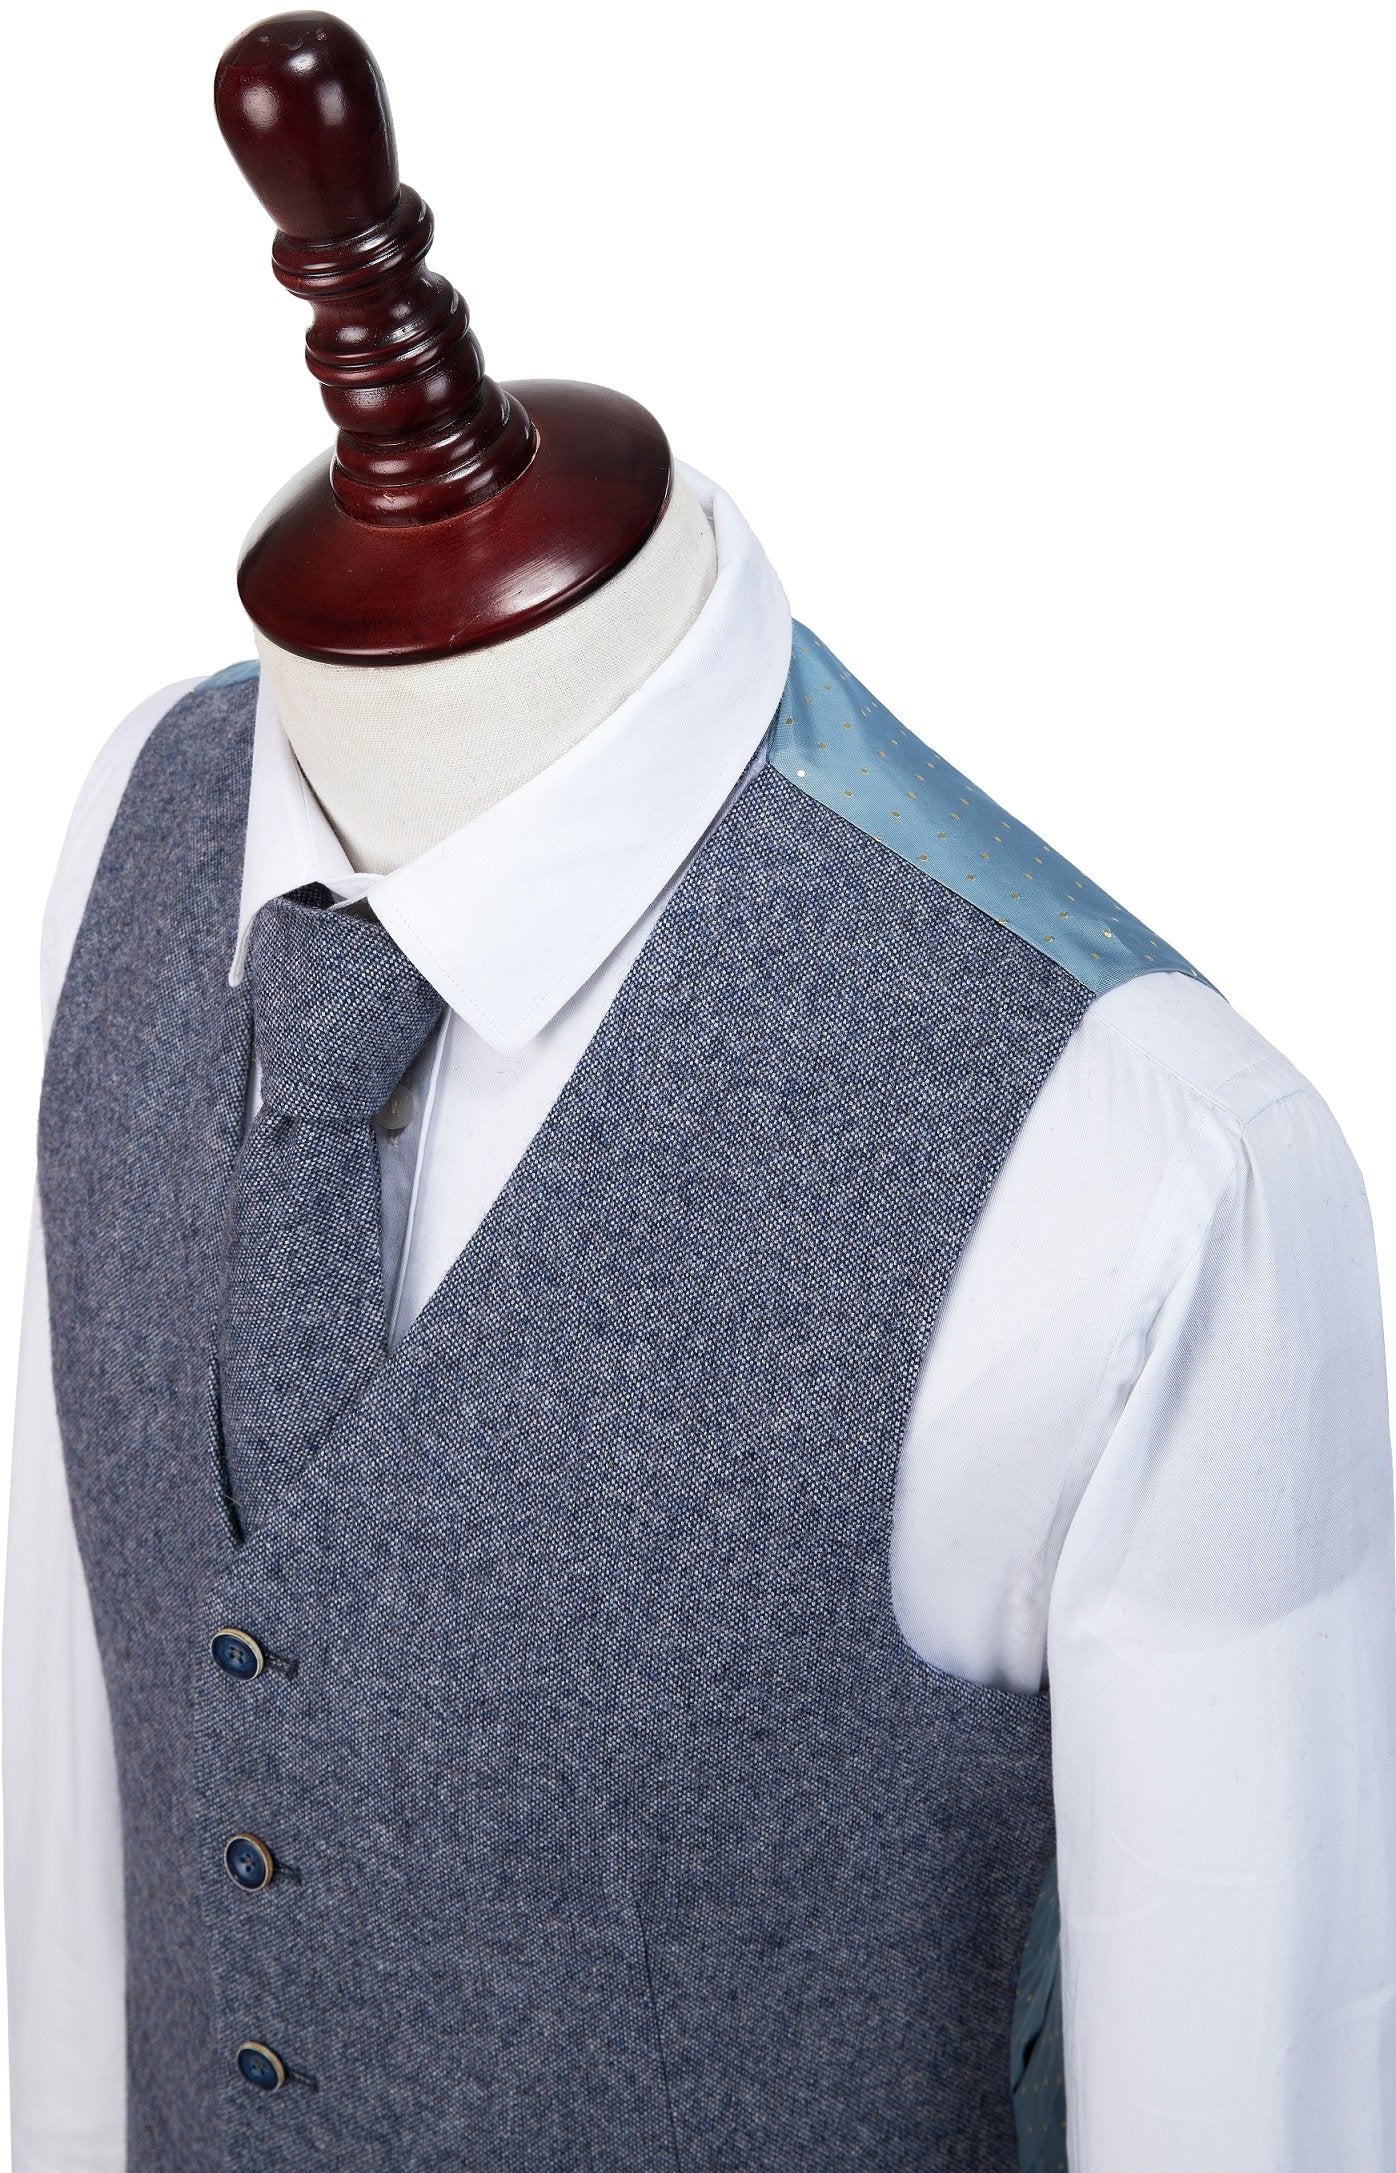 Grey Blue Barleycorn Tweed Suit